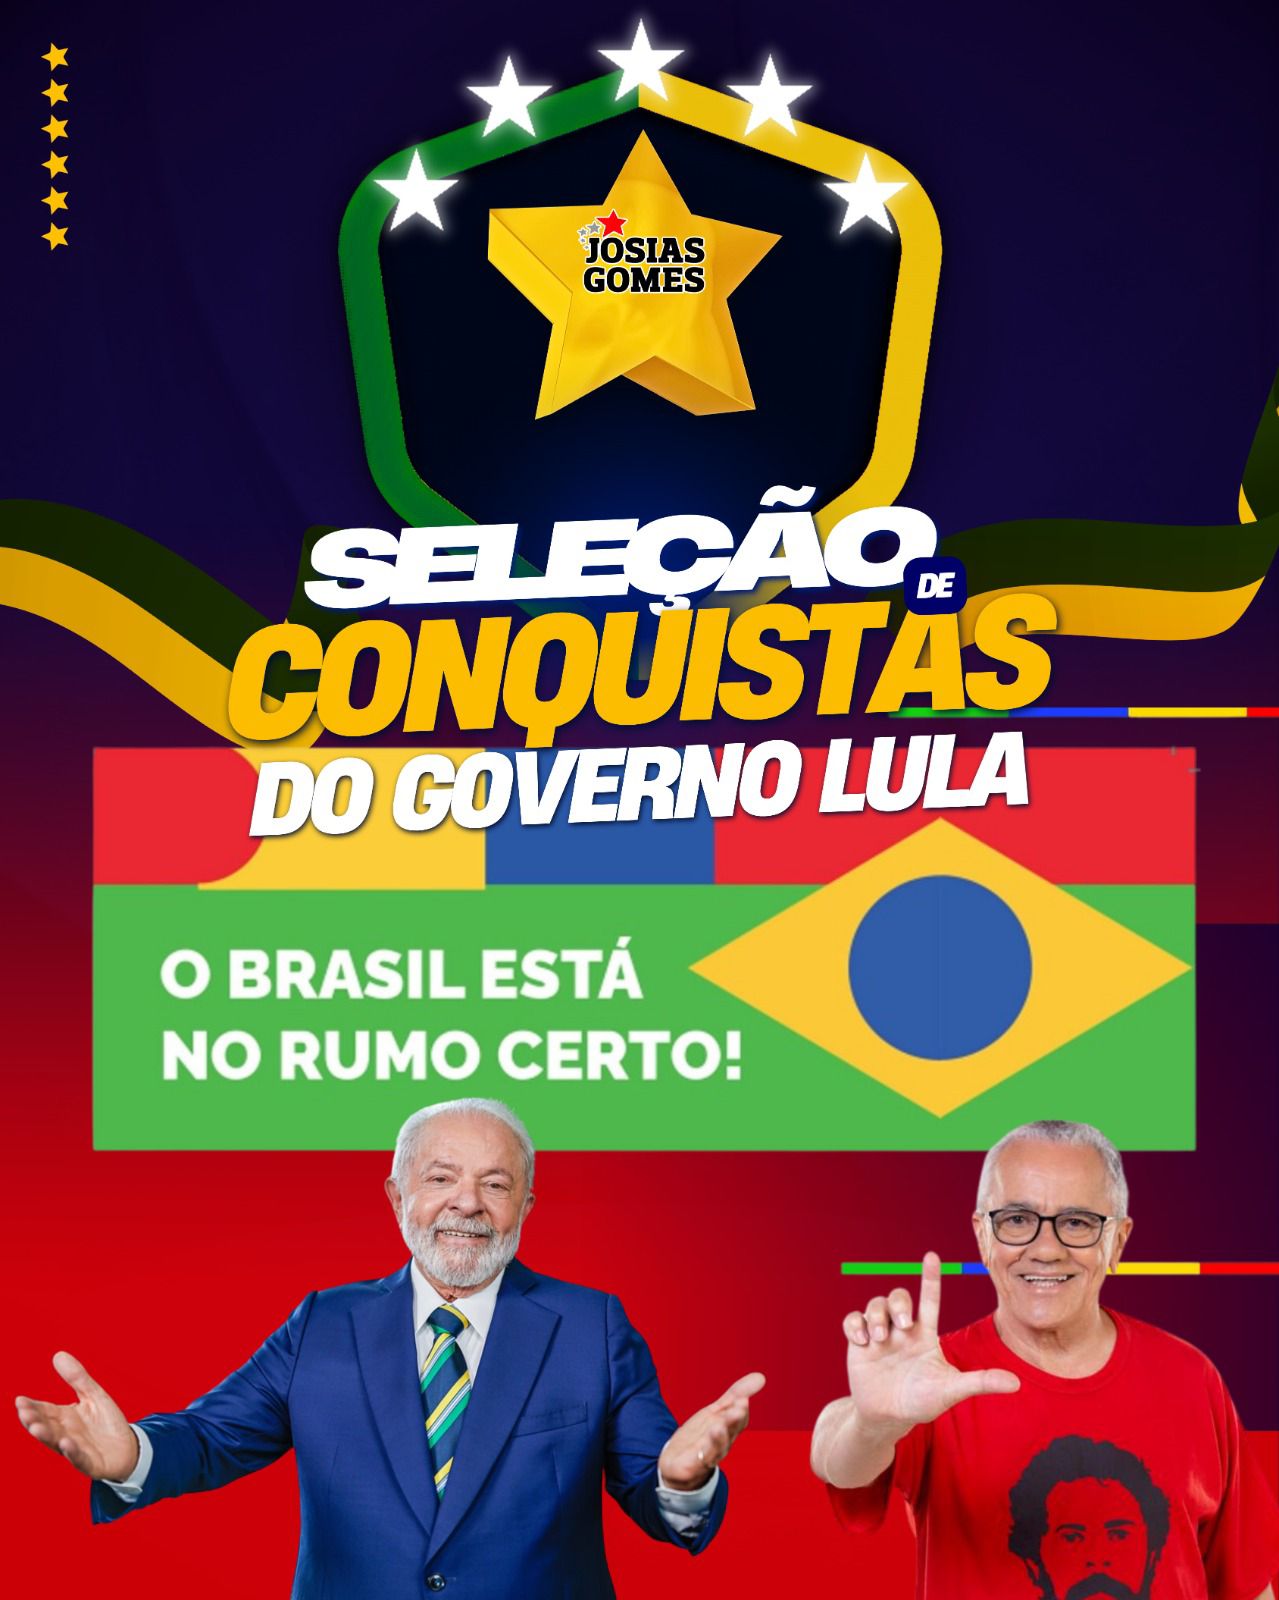 Confira A Seleção De Conquistas Do Governo Lula